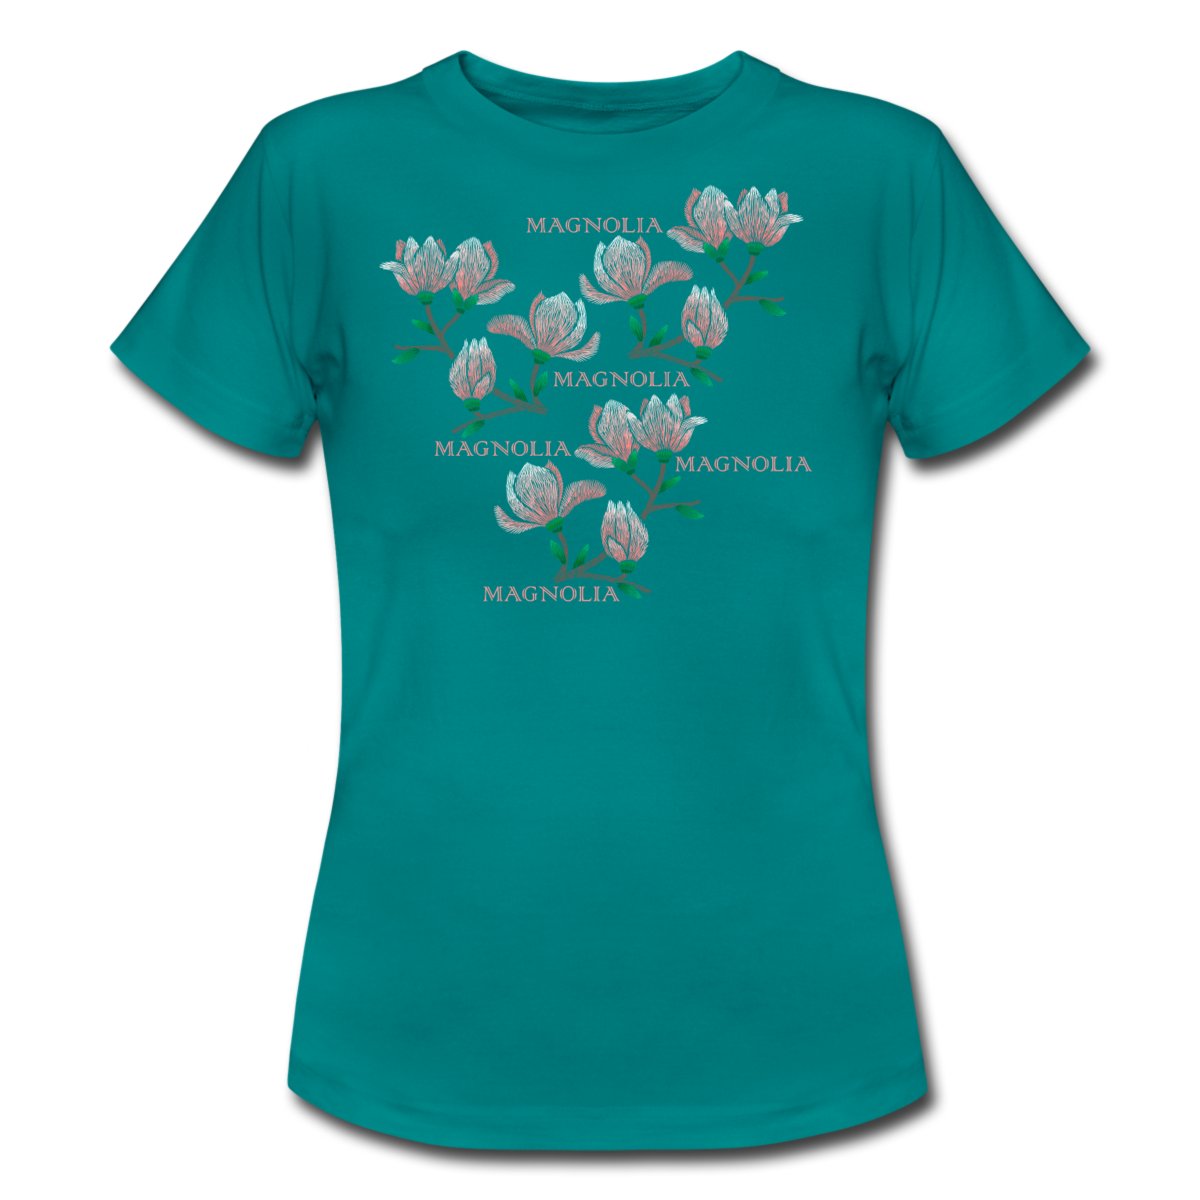 magnolia-t-shirt-dam-db.jpg